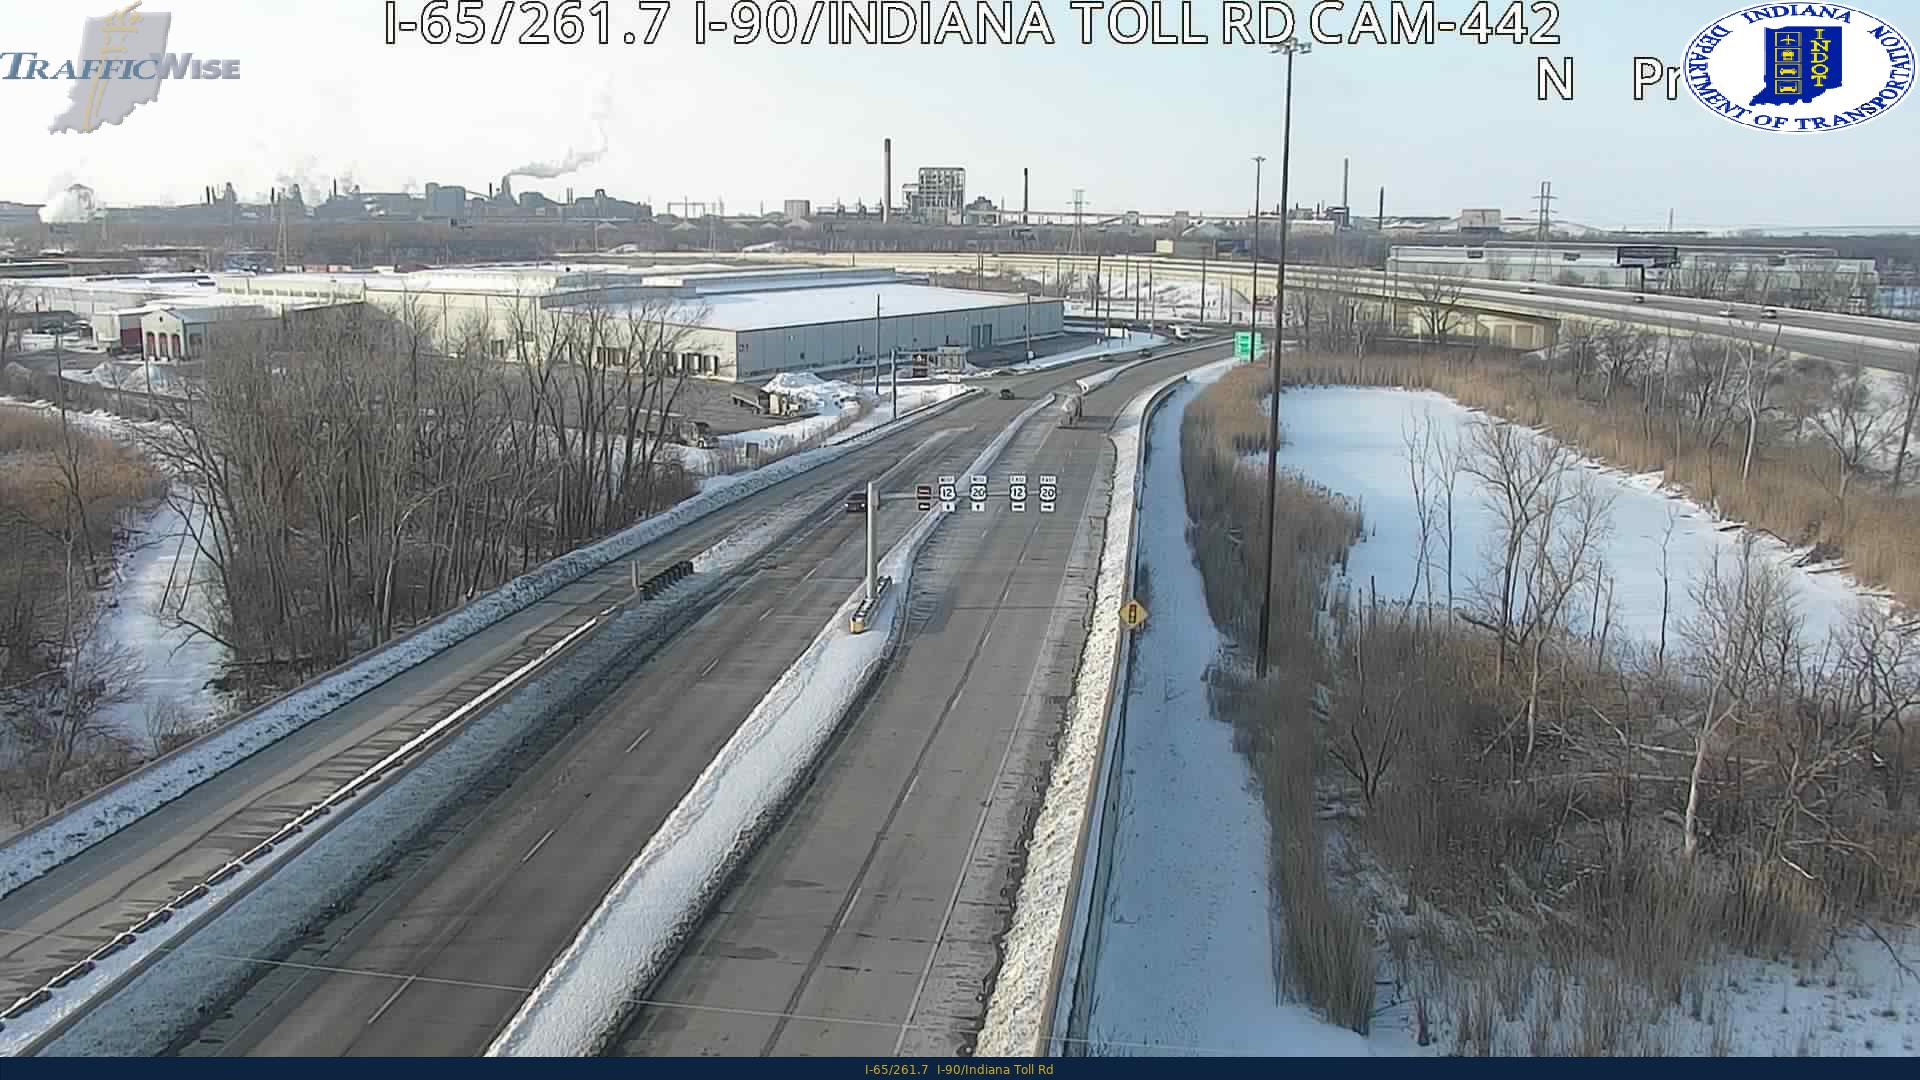 I-65/261.7  I-90/Indiana Toll Rd (296) () - Indiana